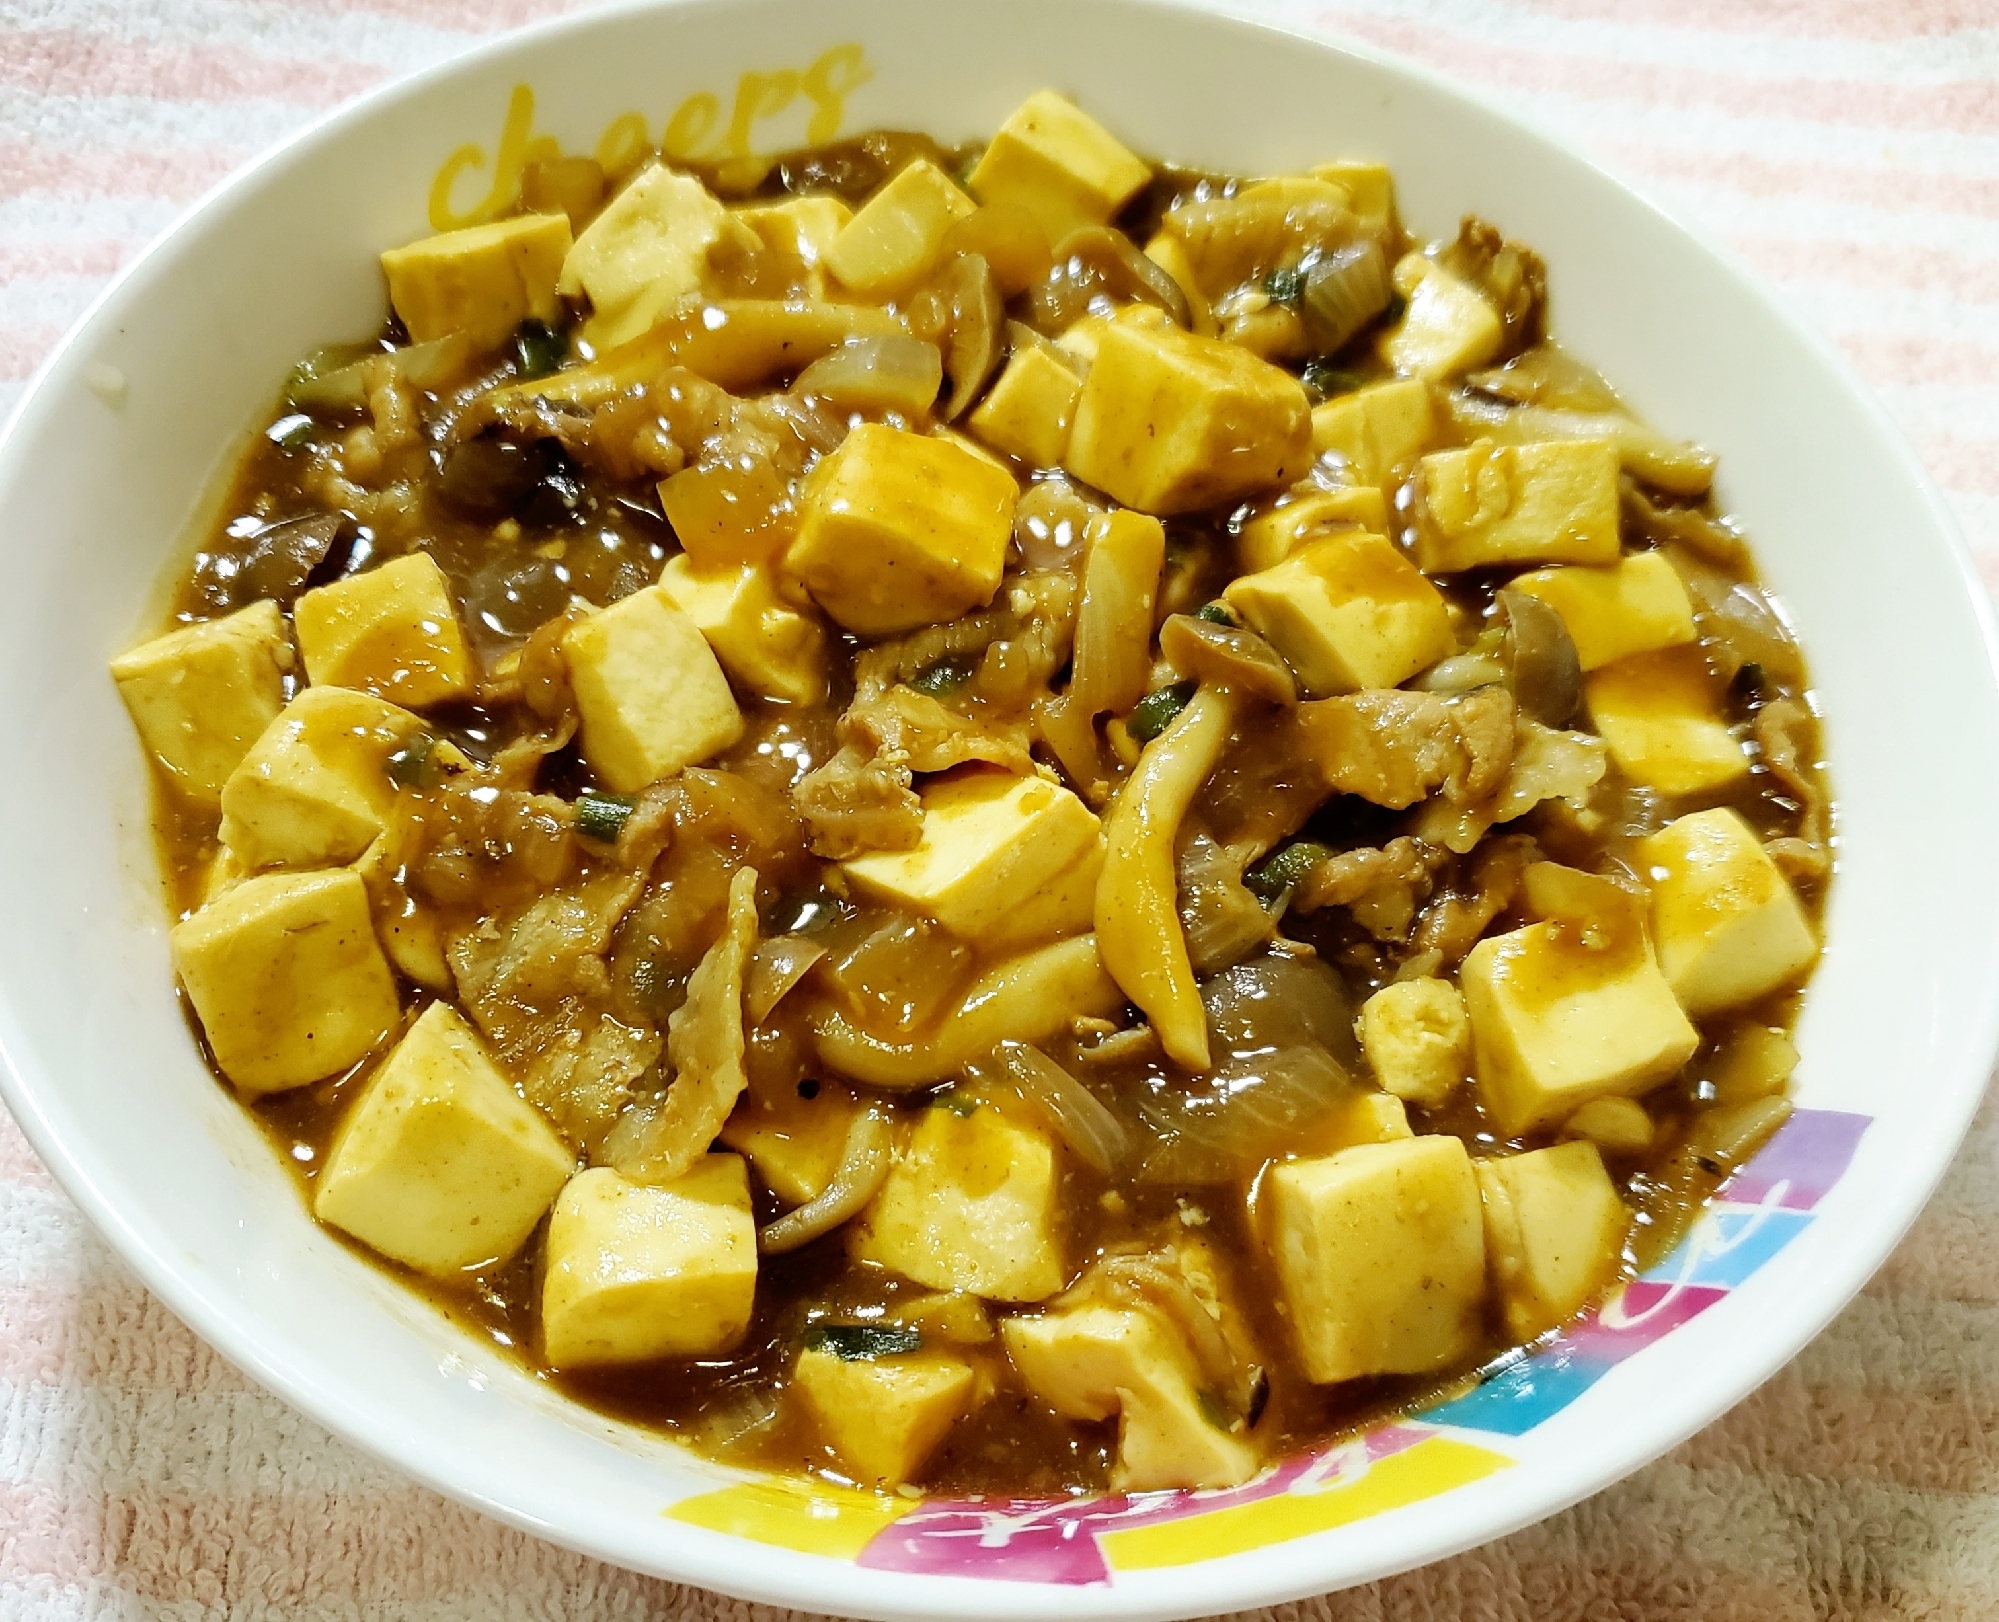 カレー豆腐